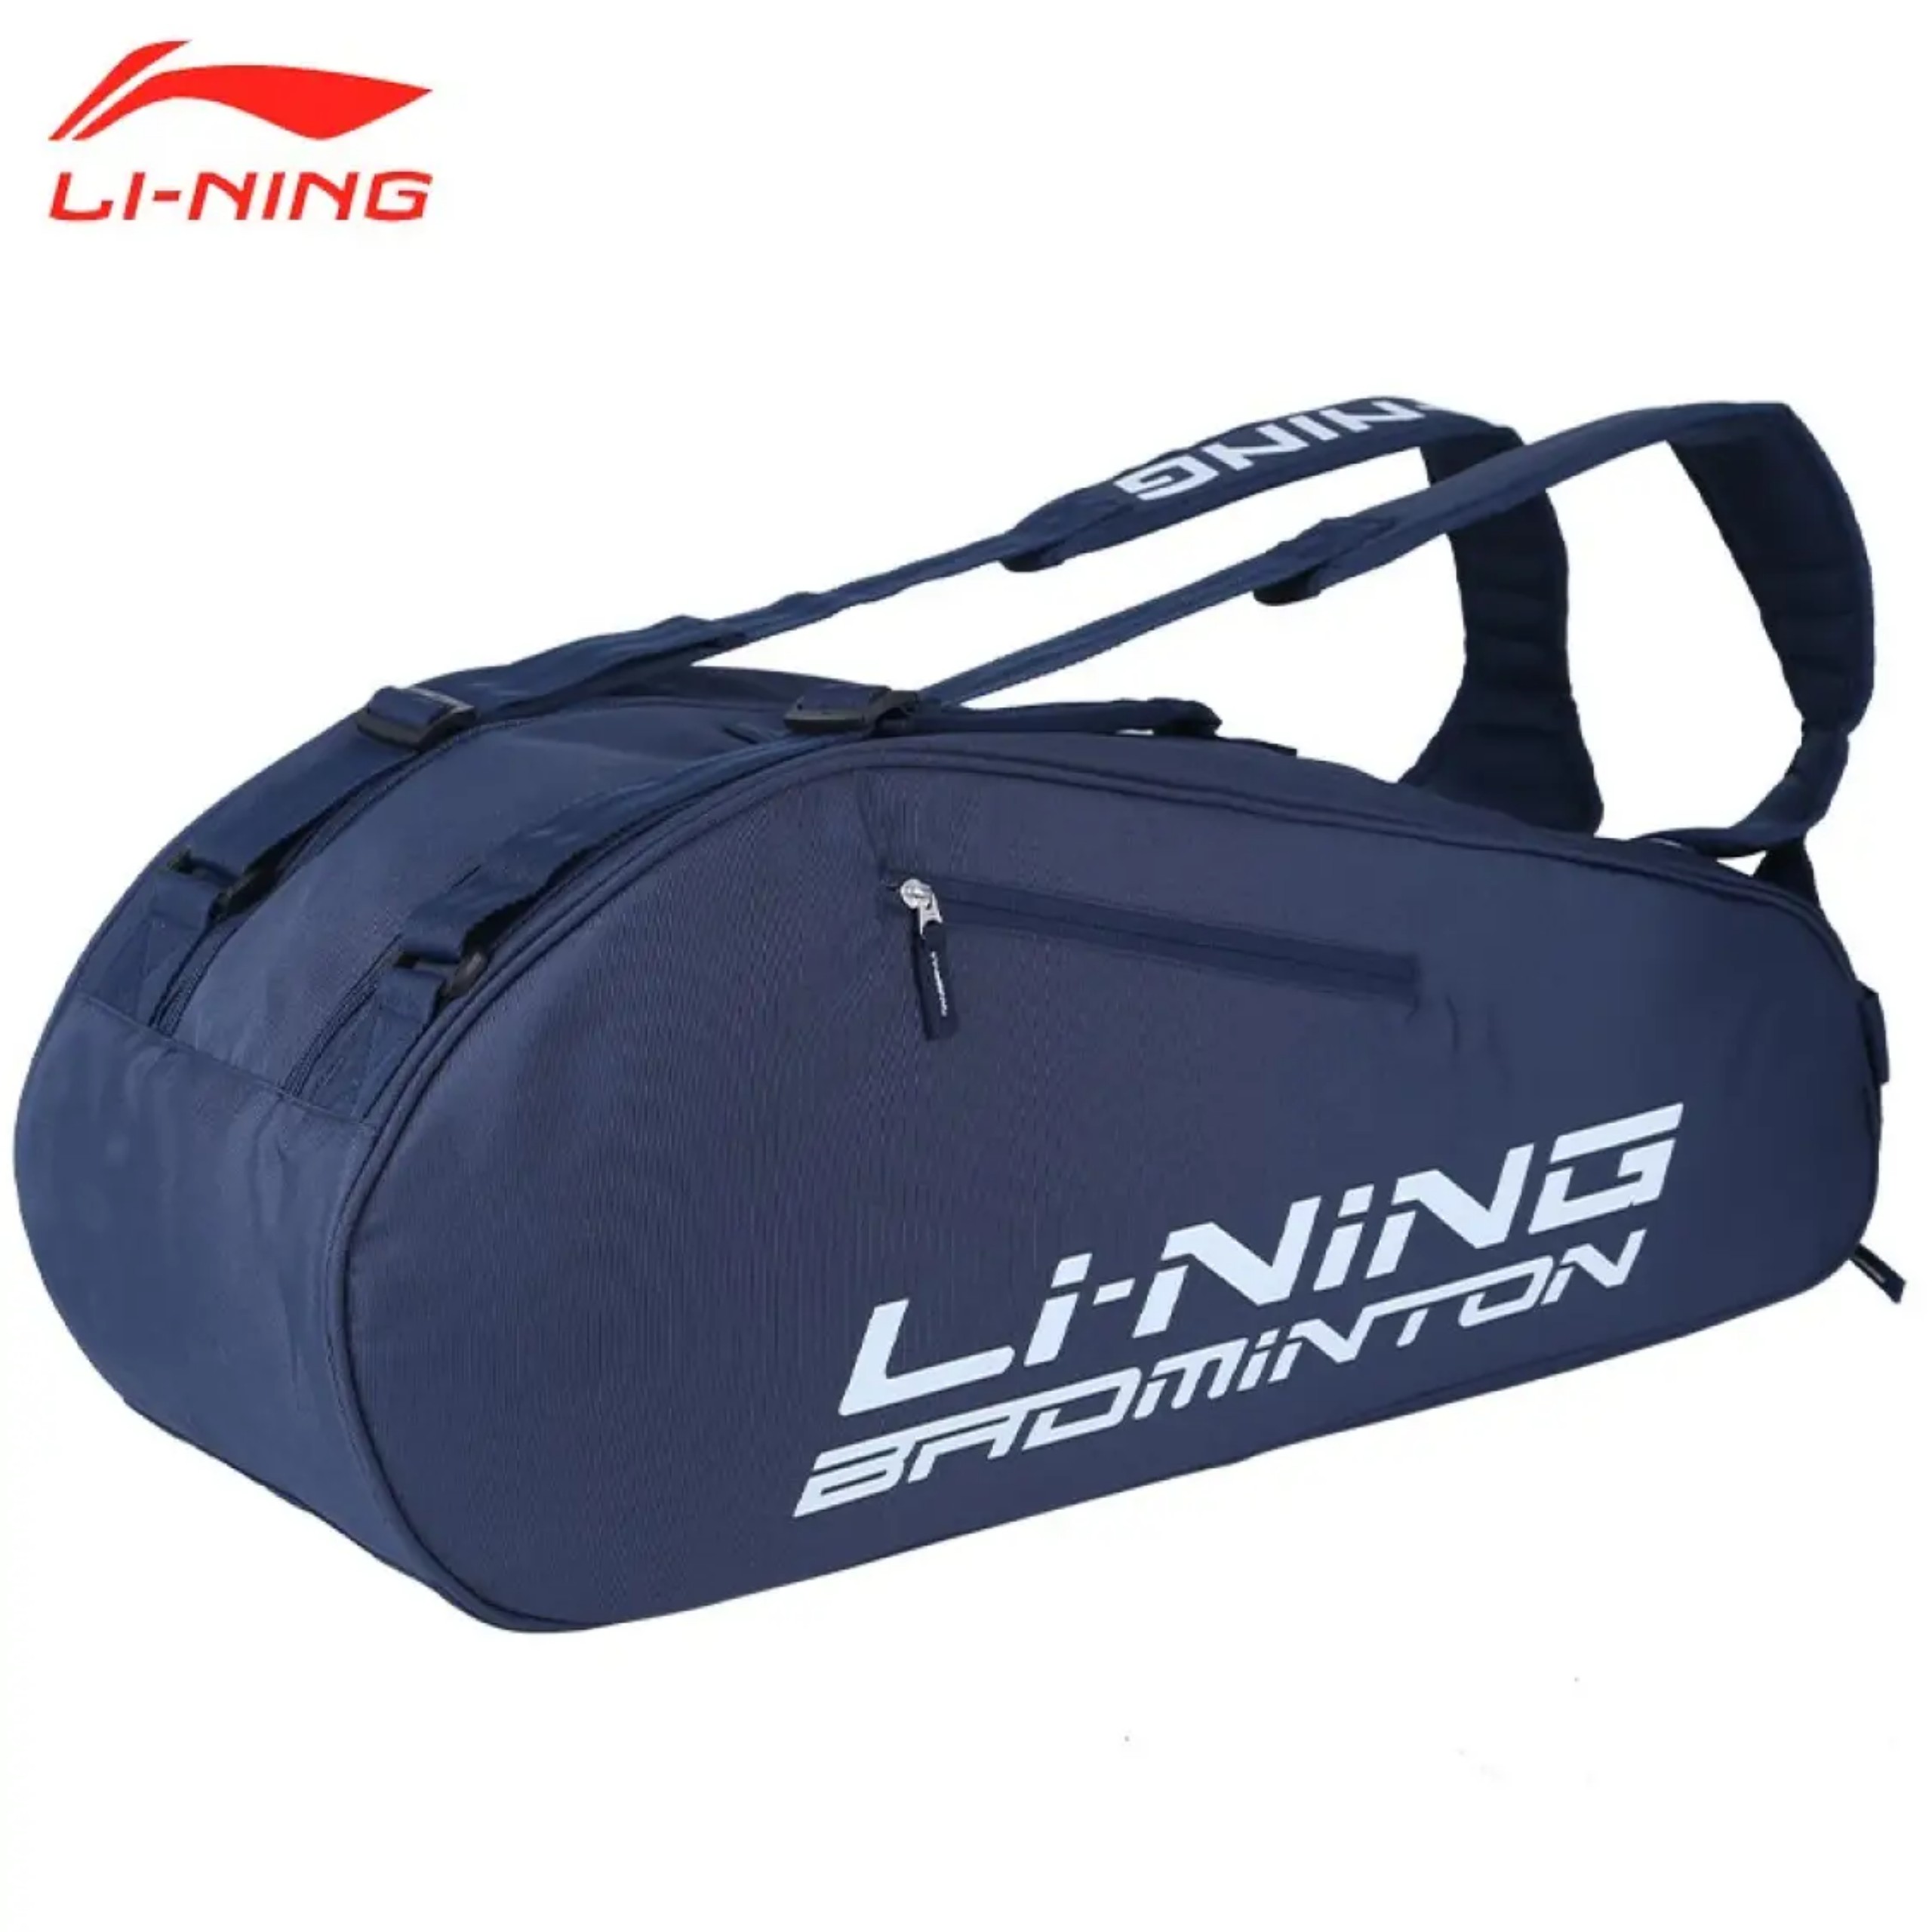 Túi vợt thể thao cầu lông Lining chính hãng ABJS023 có 2 màu lựa chọn